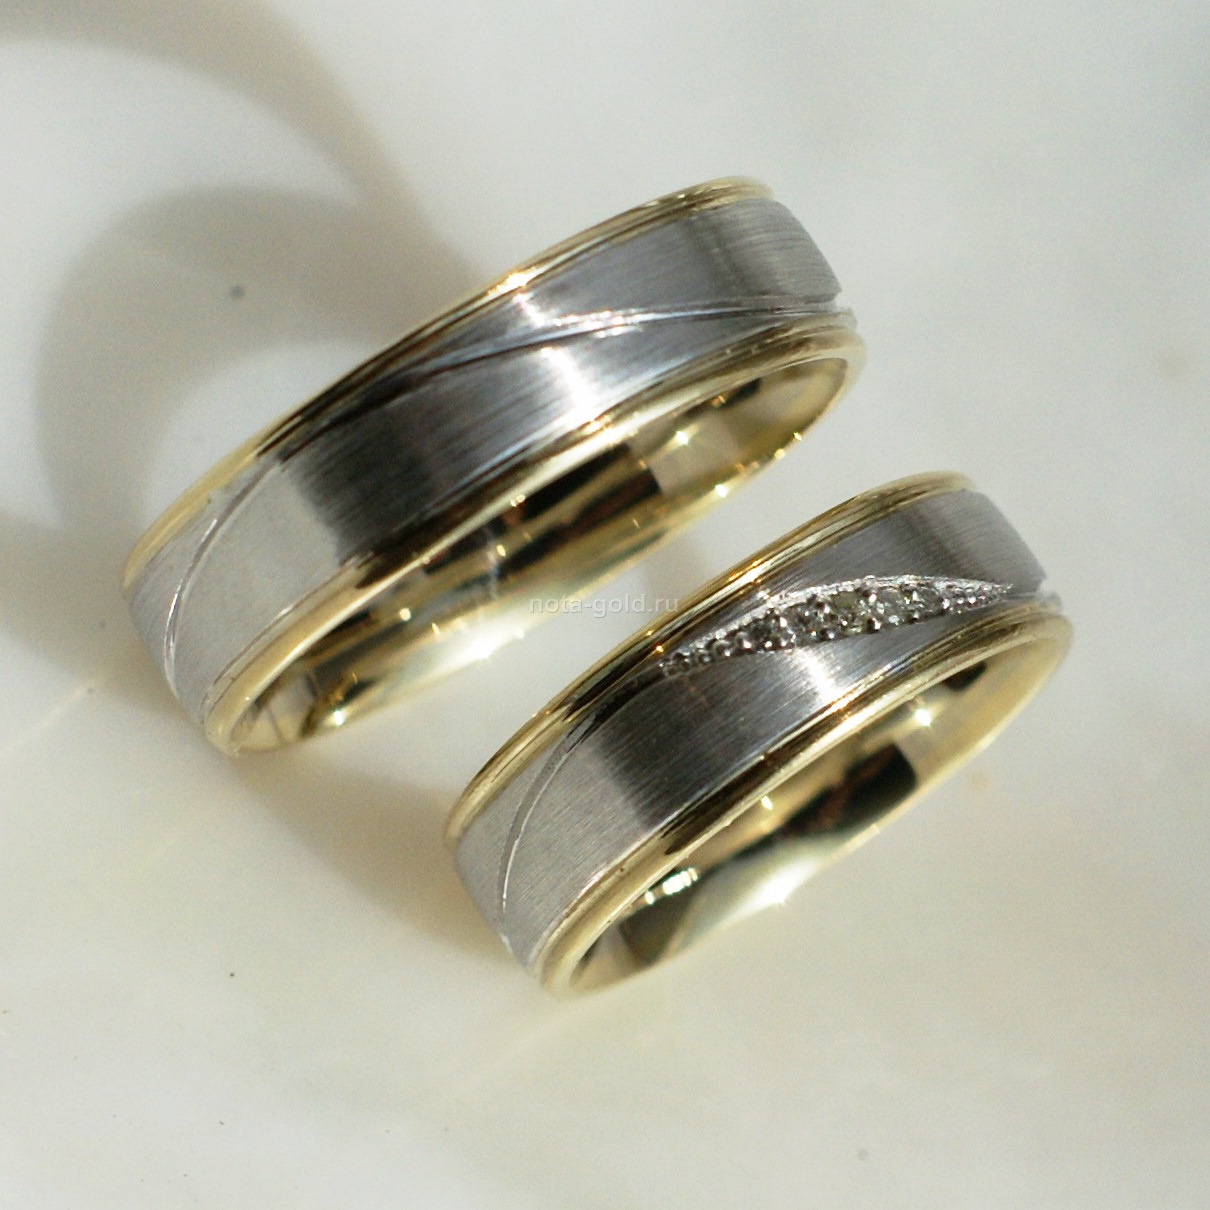 Ювелирная мастерская Nota-Gold изготовила на заказ двухцветные золотые обручальные кольца.